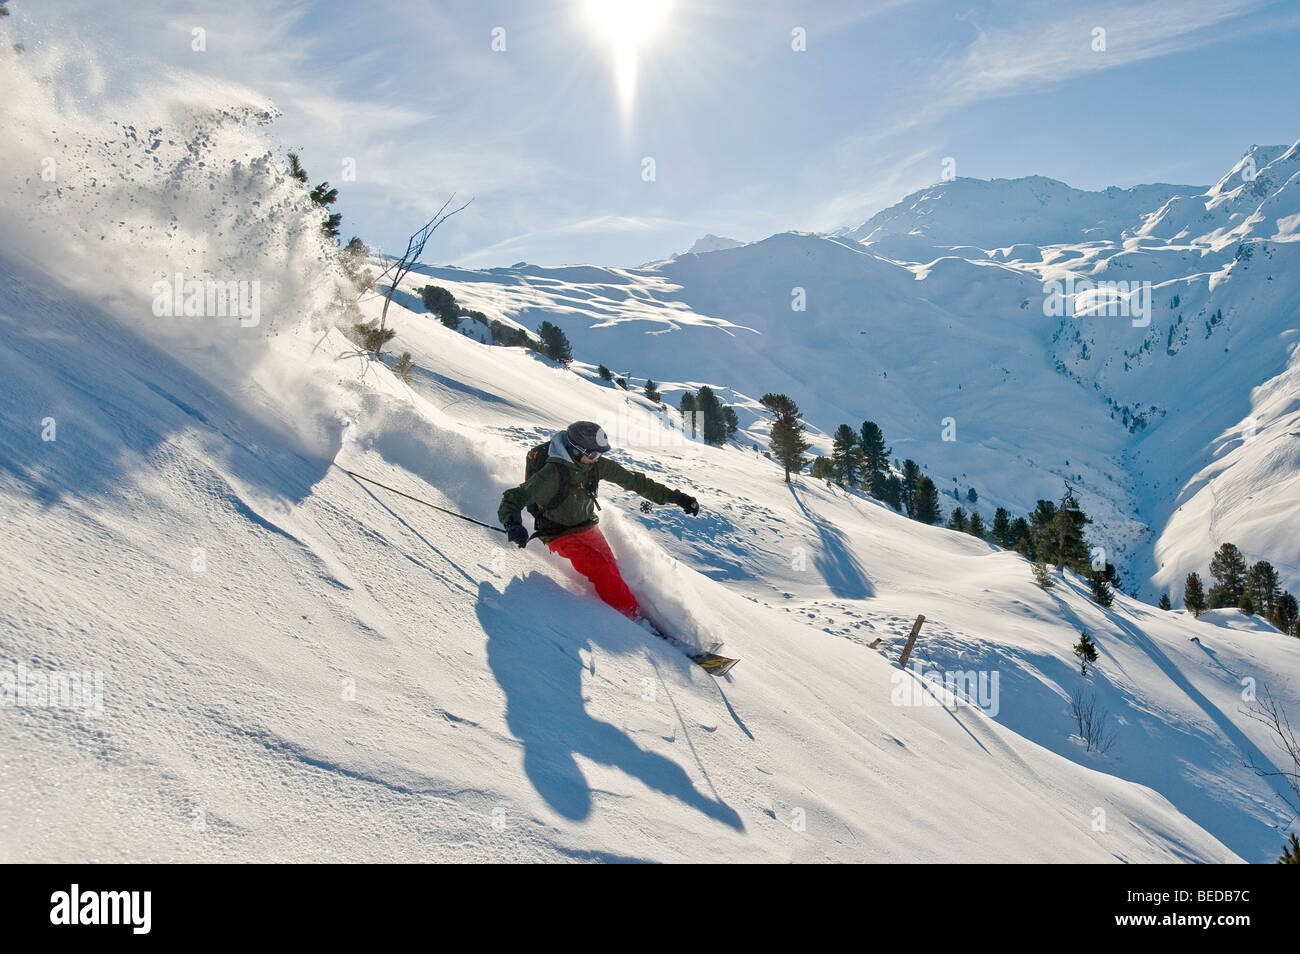 La neige profonde, skieur freerider, dans la neige profonde avec vue panoramique sur les Alpes et le soleil Banque D'Images